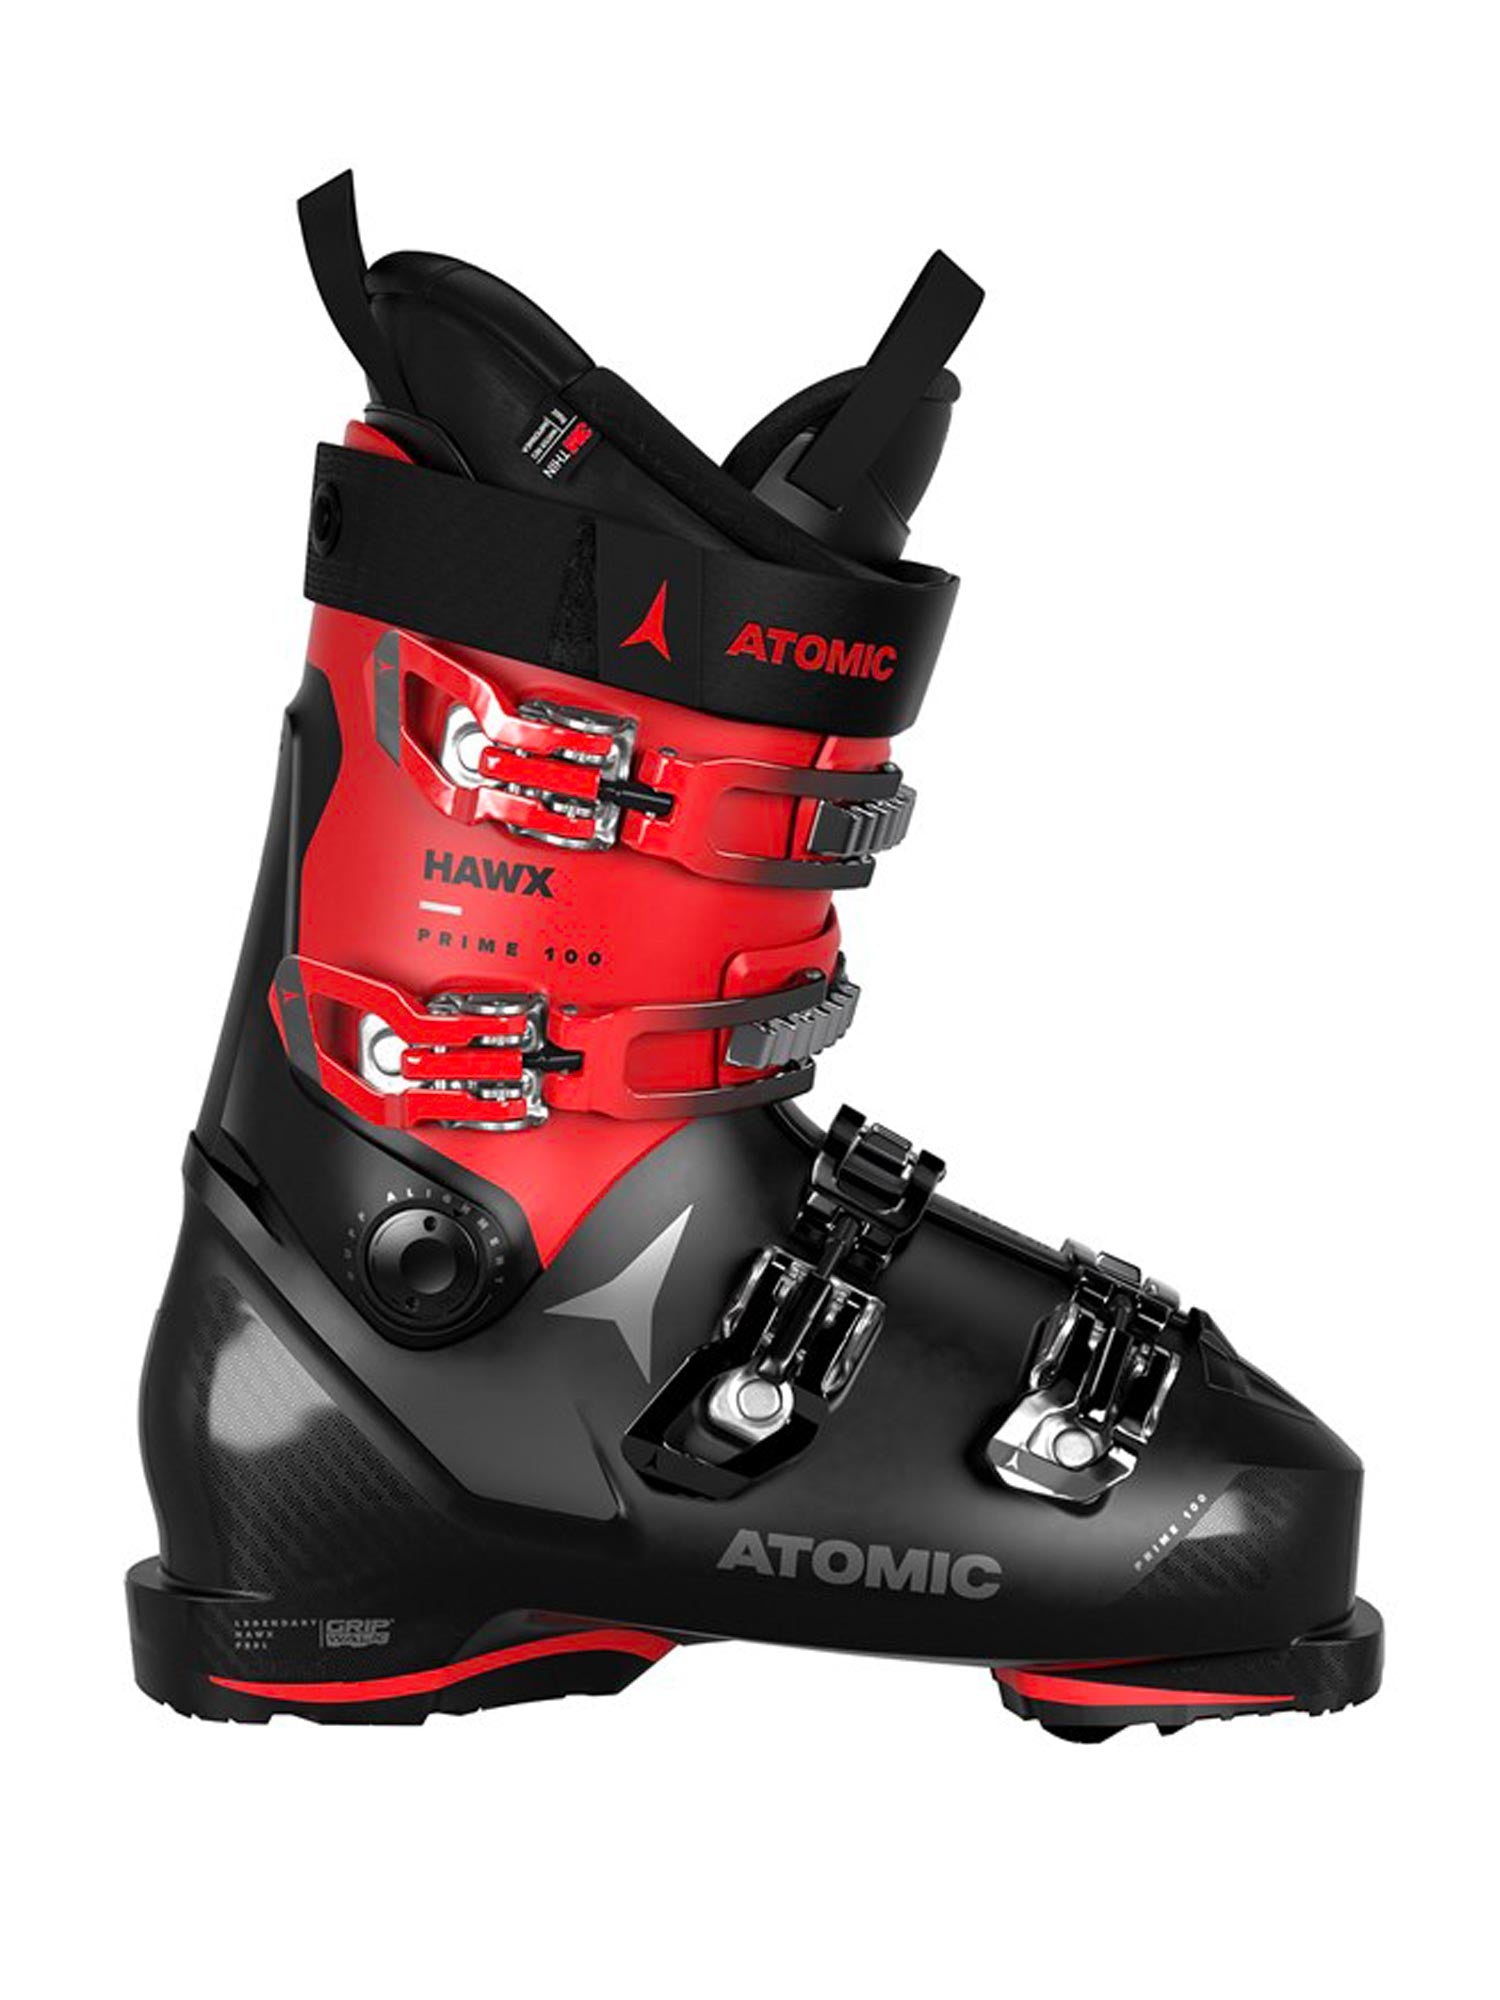 men's Atomic Hawk Prime 100 ski boots, black & red